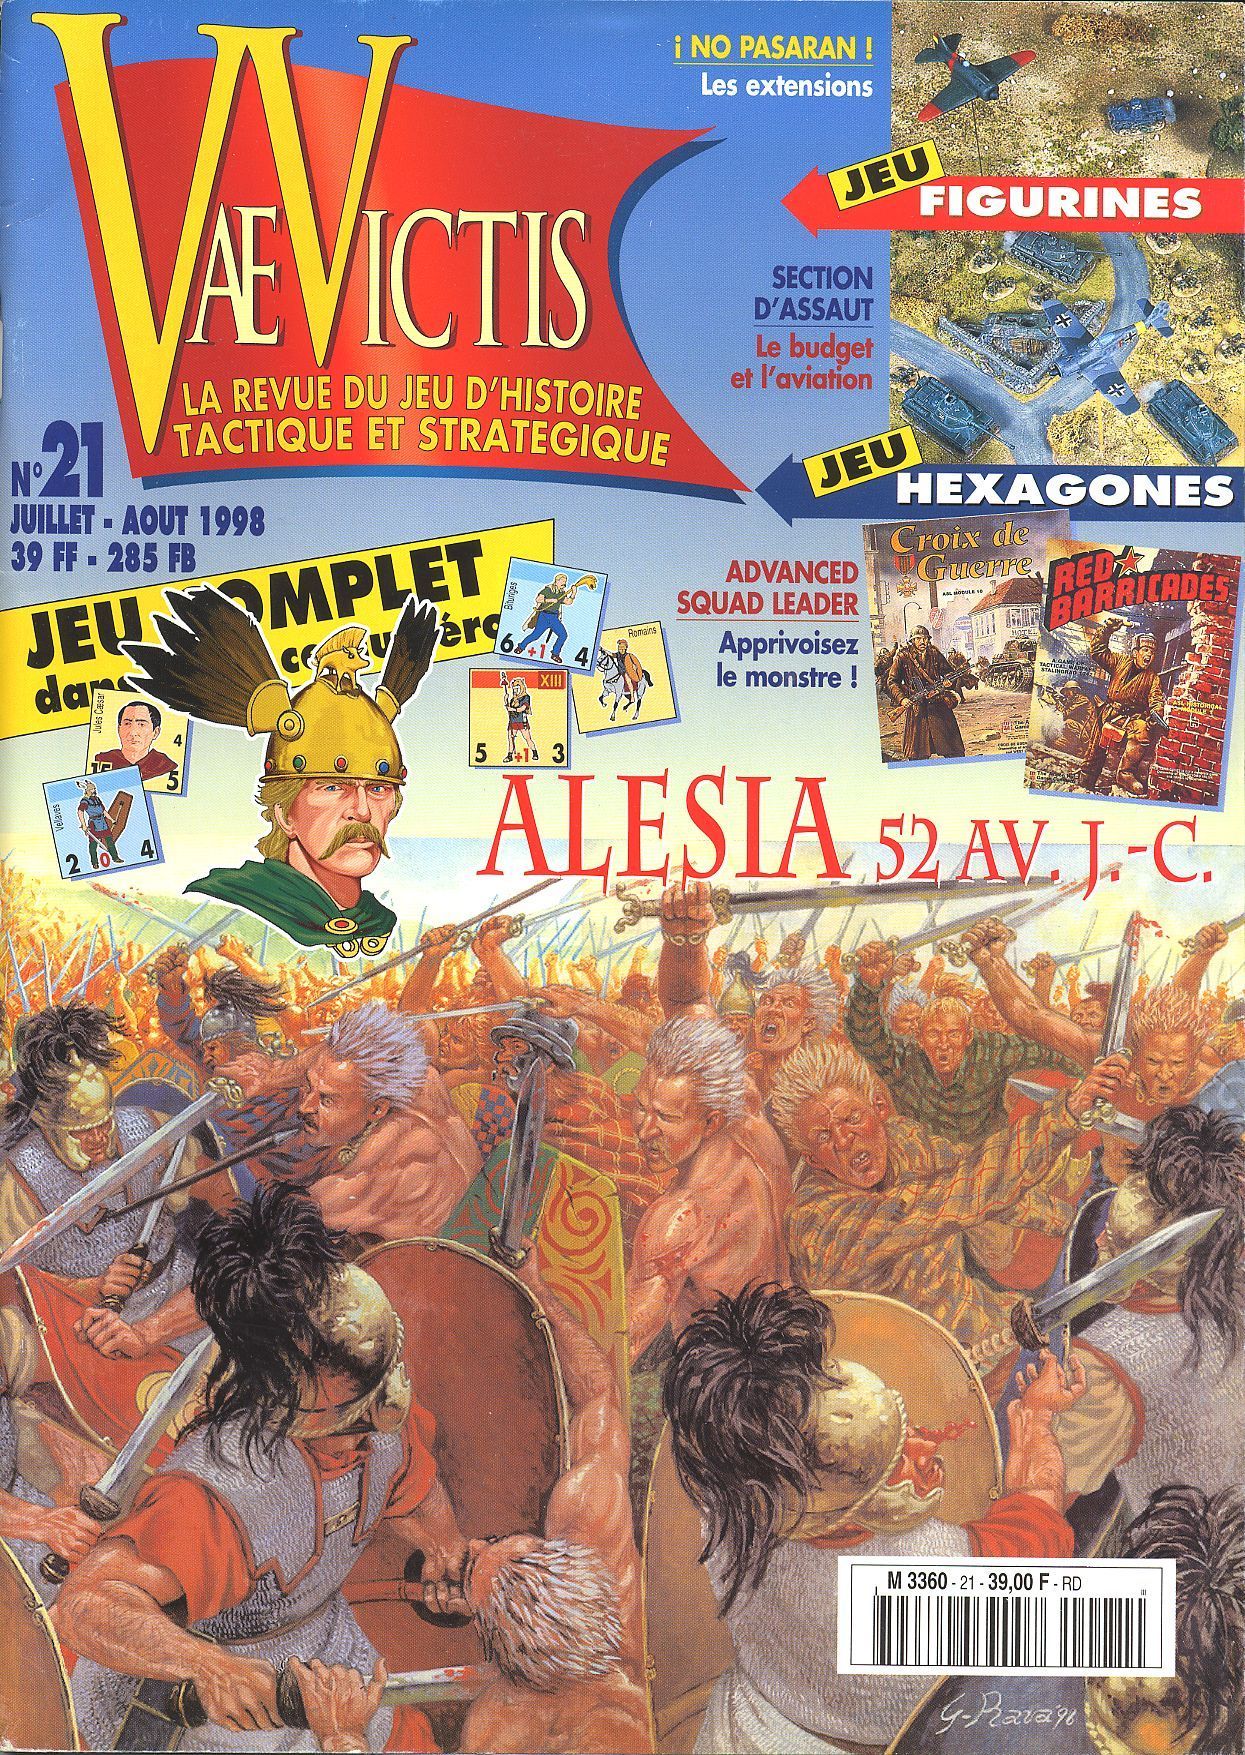 Alésia, 52 Av. J.-C.: César contre Vercingétorix